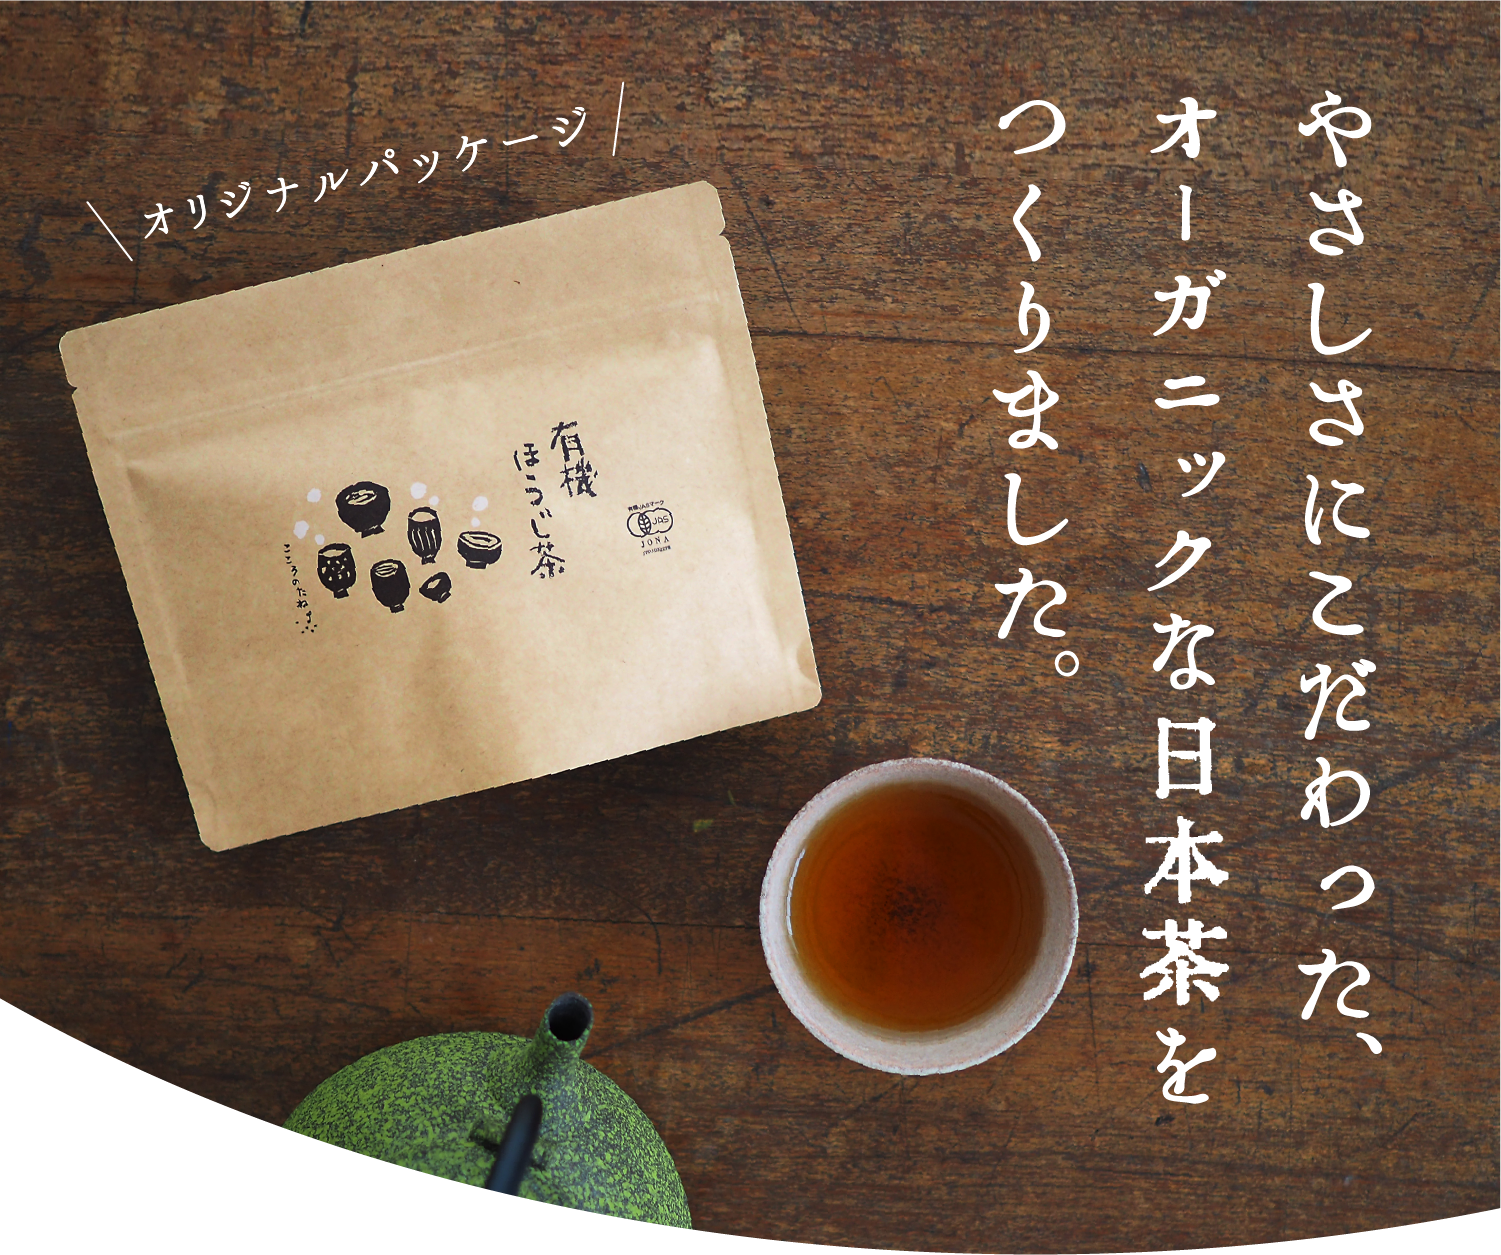 やさしさにこだわった、オーガニックな日本茶をつくりました。